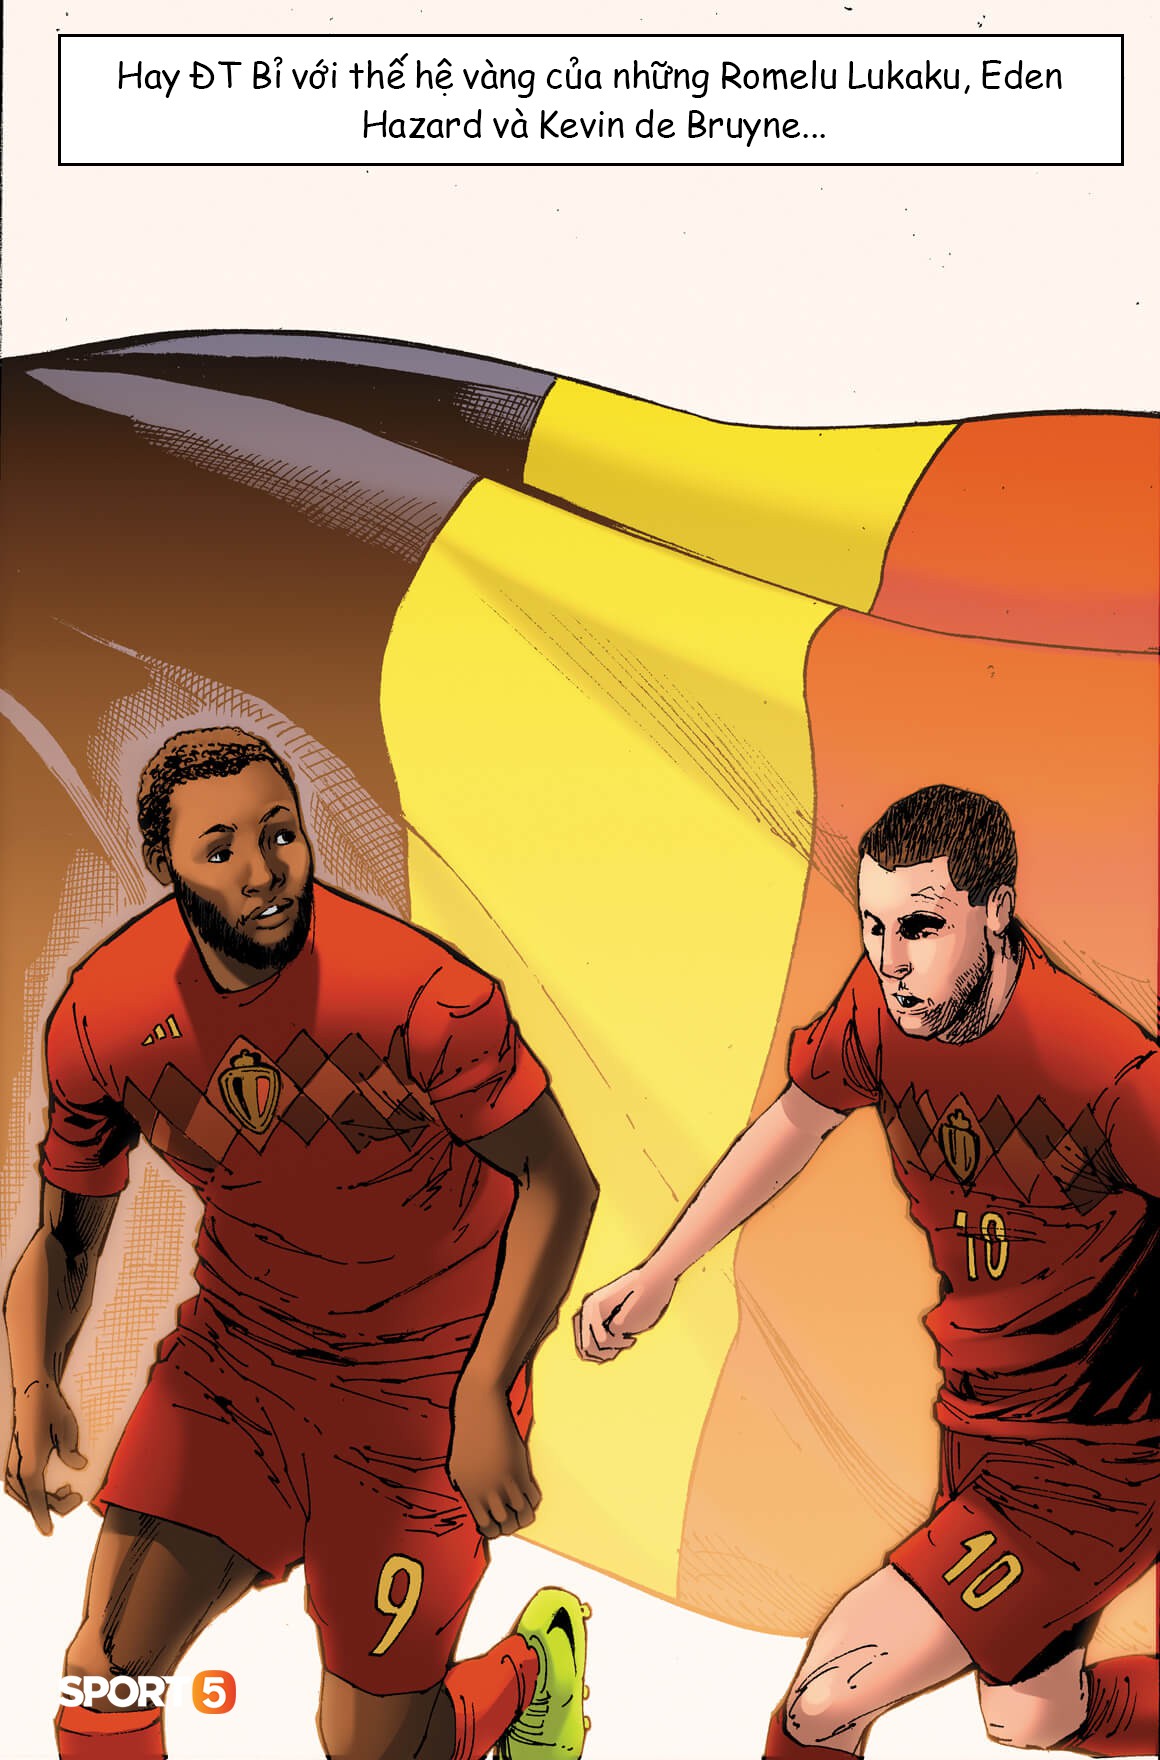 Truyện World Cup phong cách Marvel: Những kẻ thách thức ngôi vương (chương 4) - Ảnh 3.